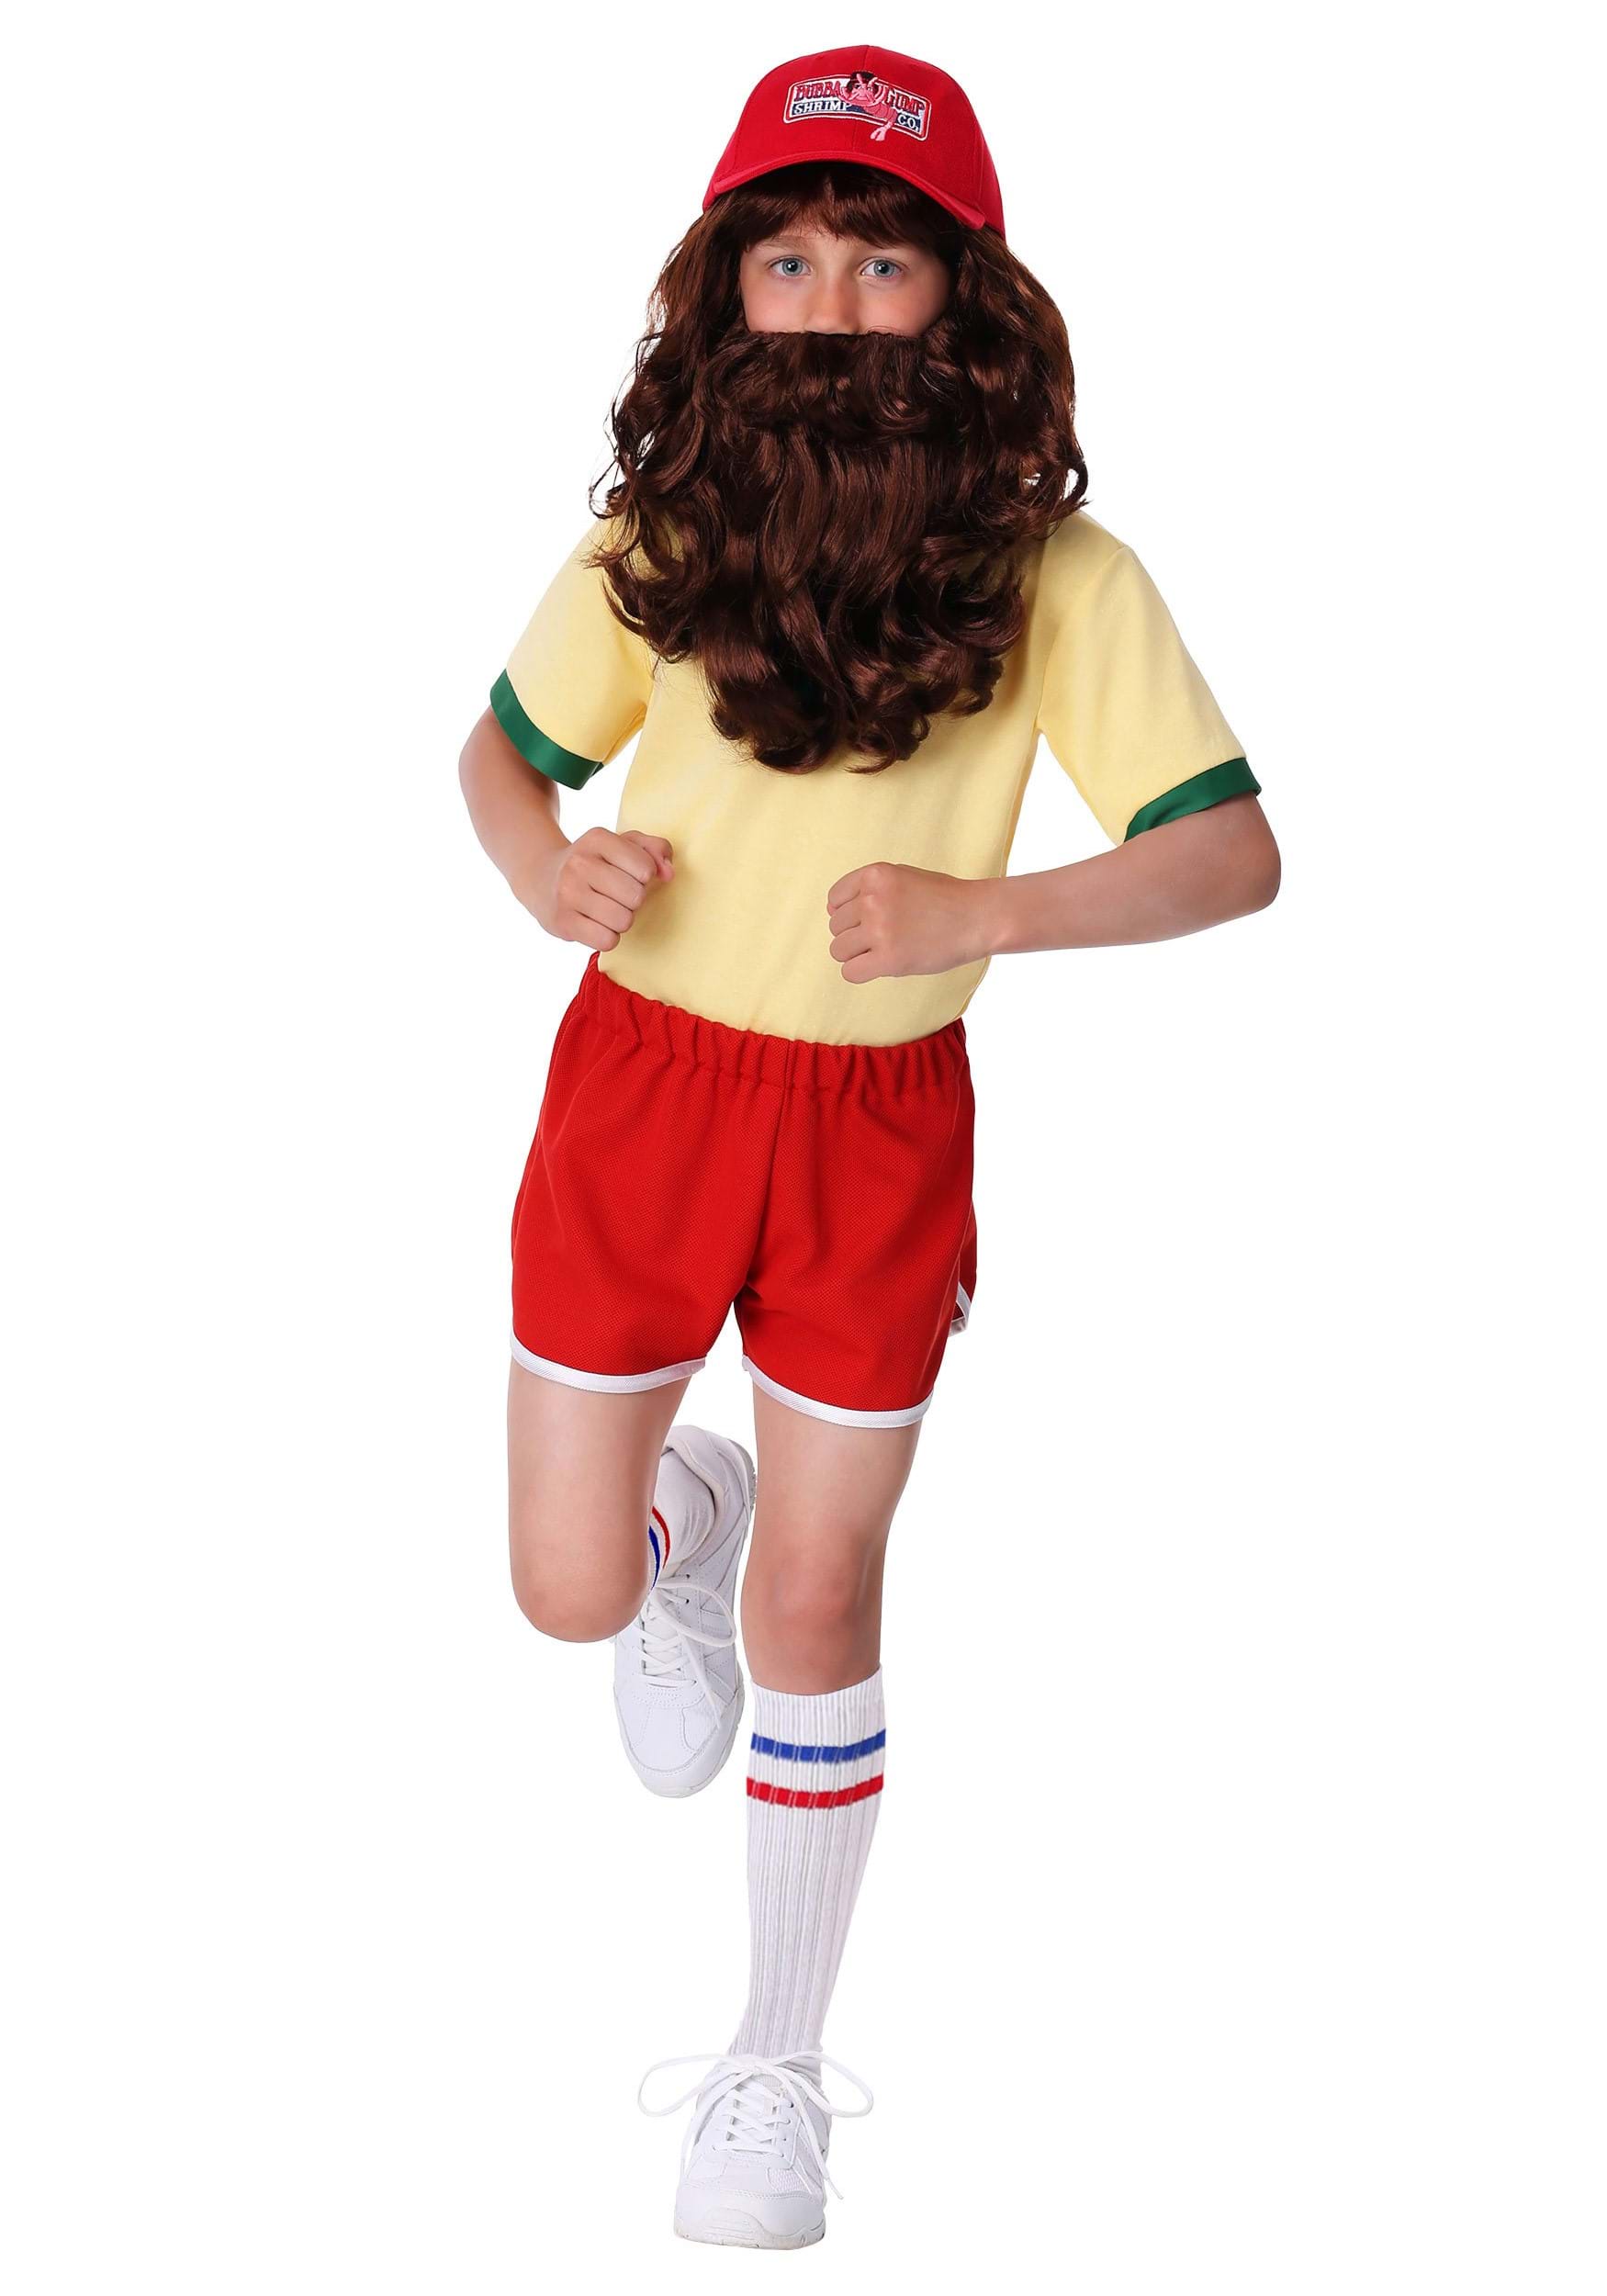 Forrest Gump Running Costume For Boys